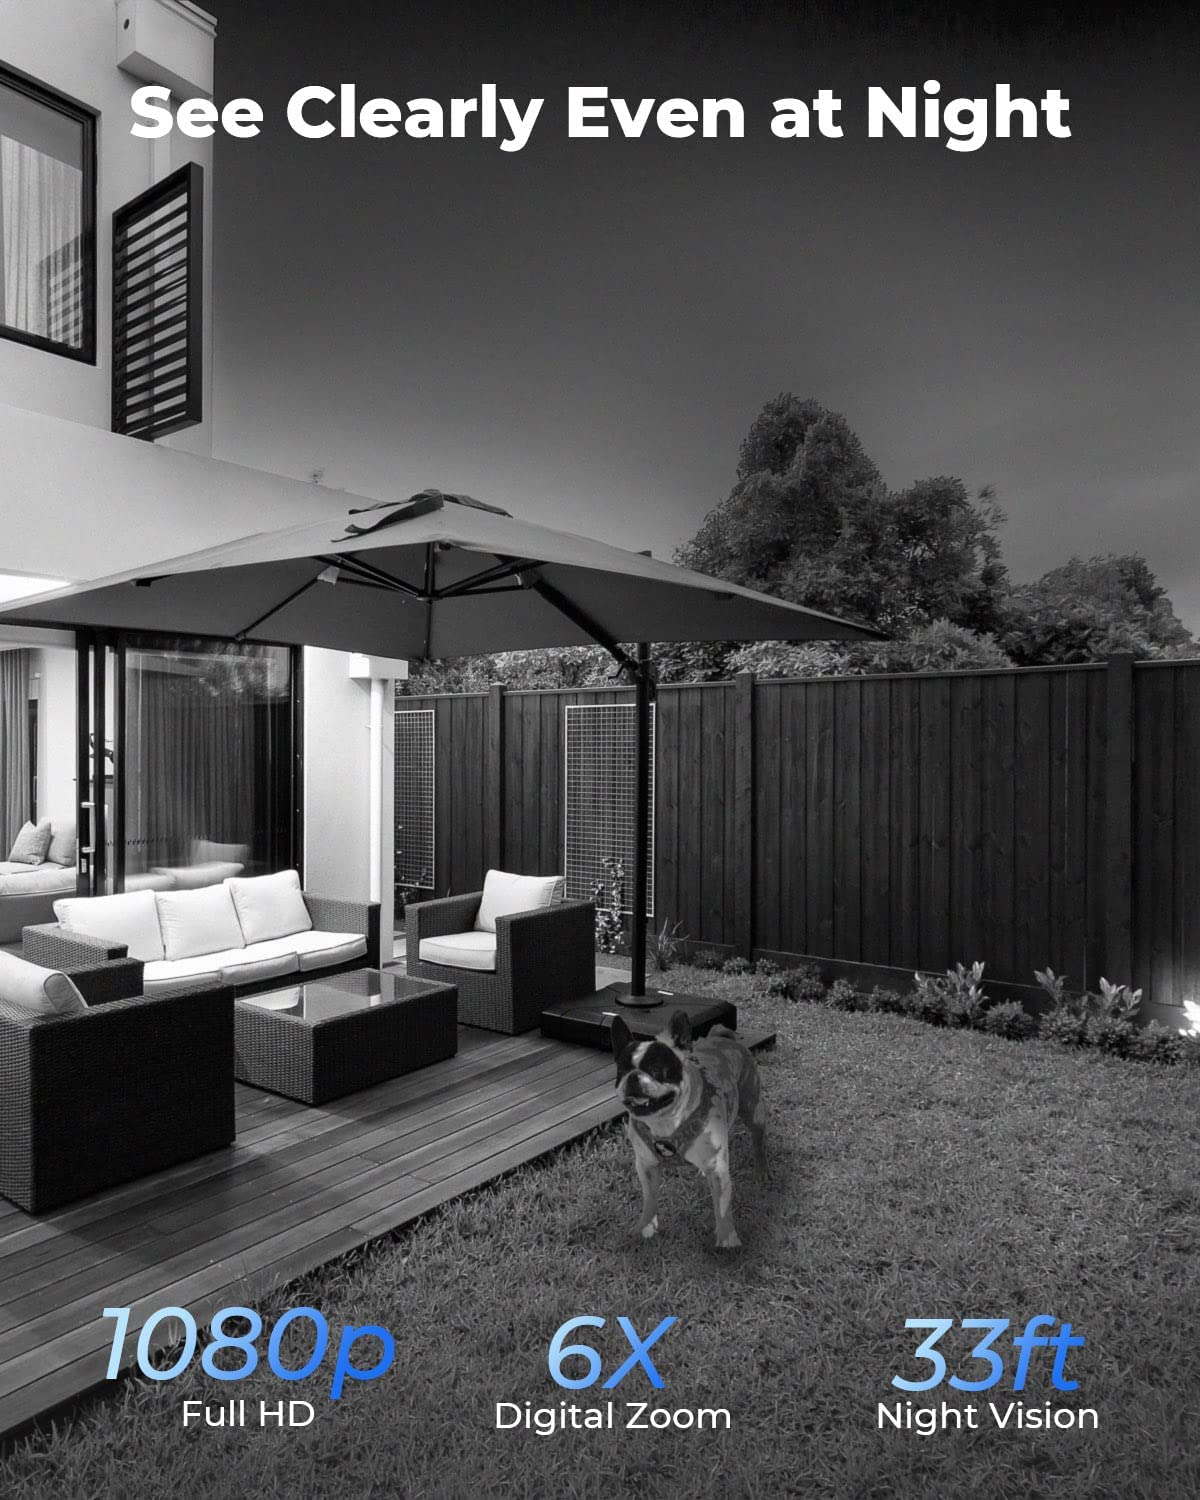 Cámara Vigilancia Reolink Exterior Sin Cables, 1080p Solar Batería,  Detección de Movimiento PIR, Visión Nocturna